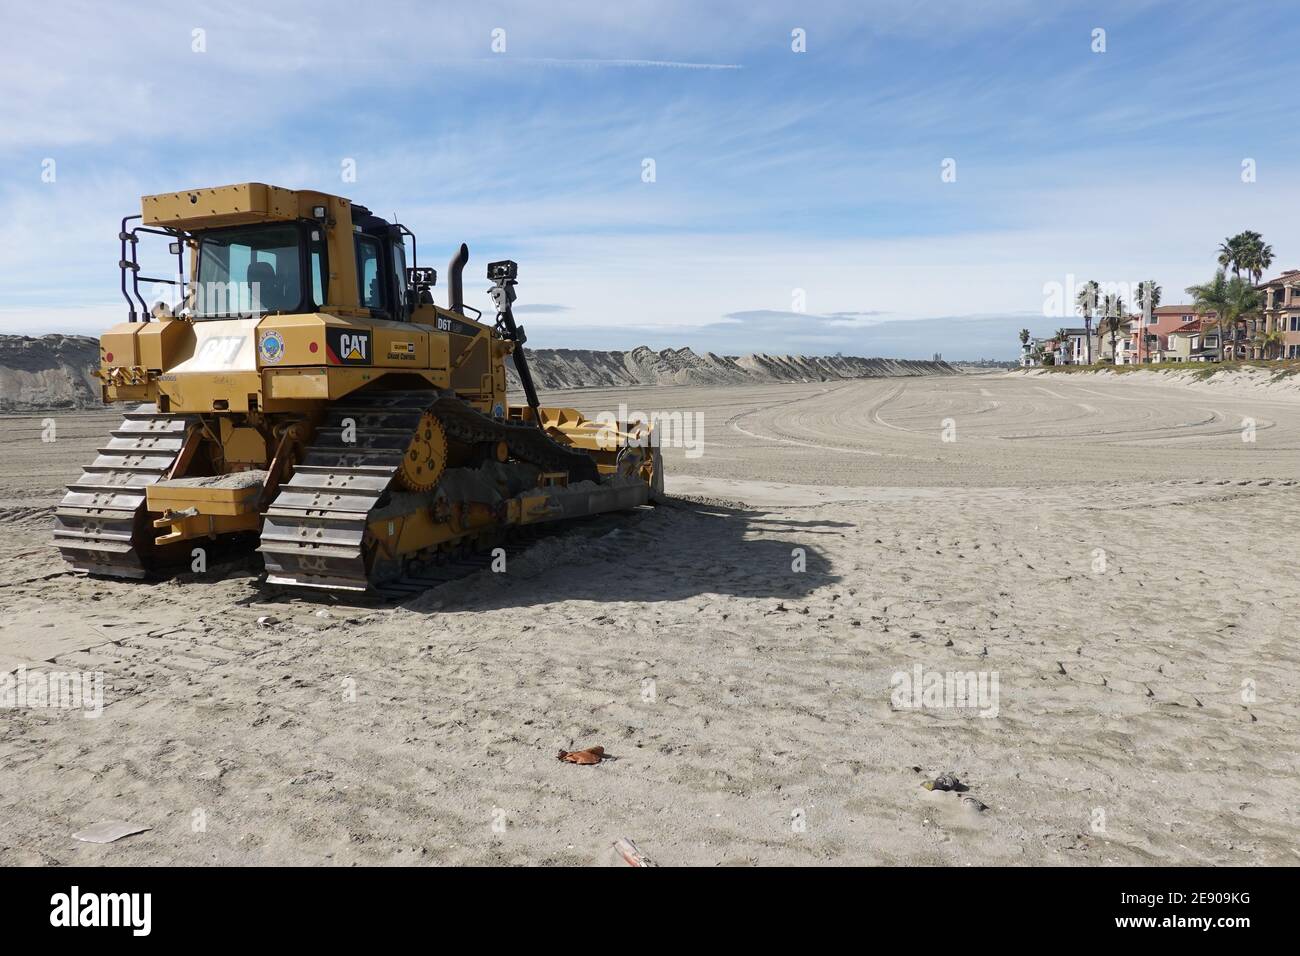 Ville de long Beach Californie Cat bulldozer bâtiment large sable berme pour protéger la propriété locale des inondations dues à des hautes Marées sur la péninsule d'Alamitos Banque D'Images